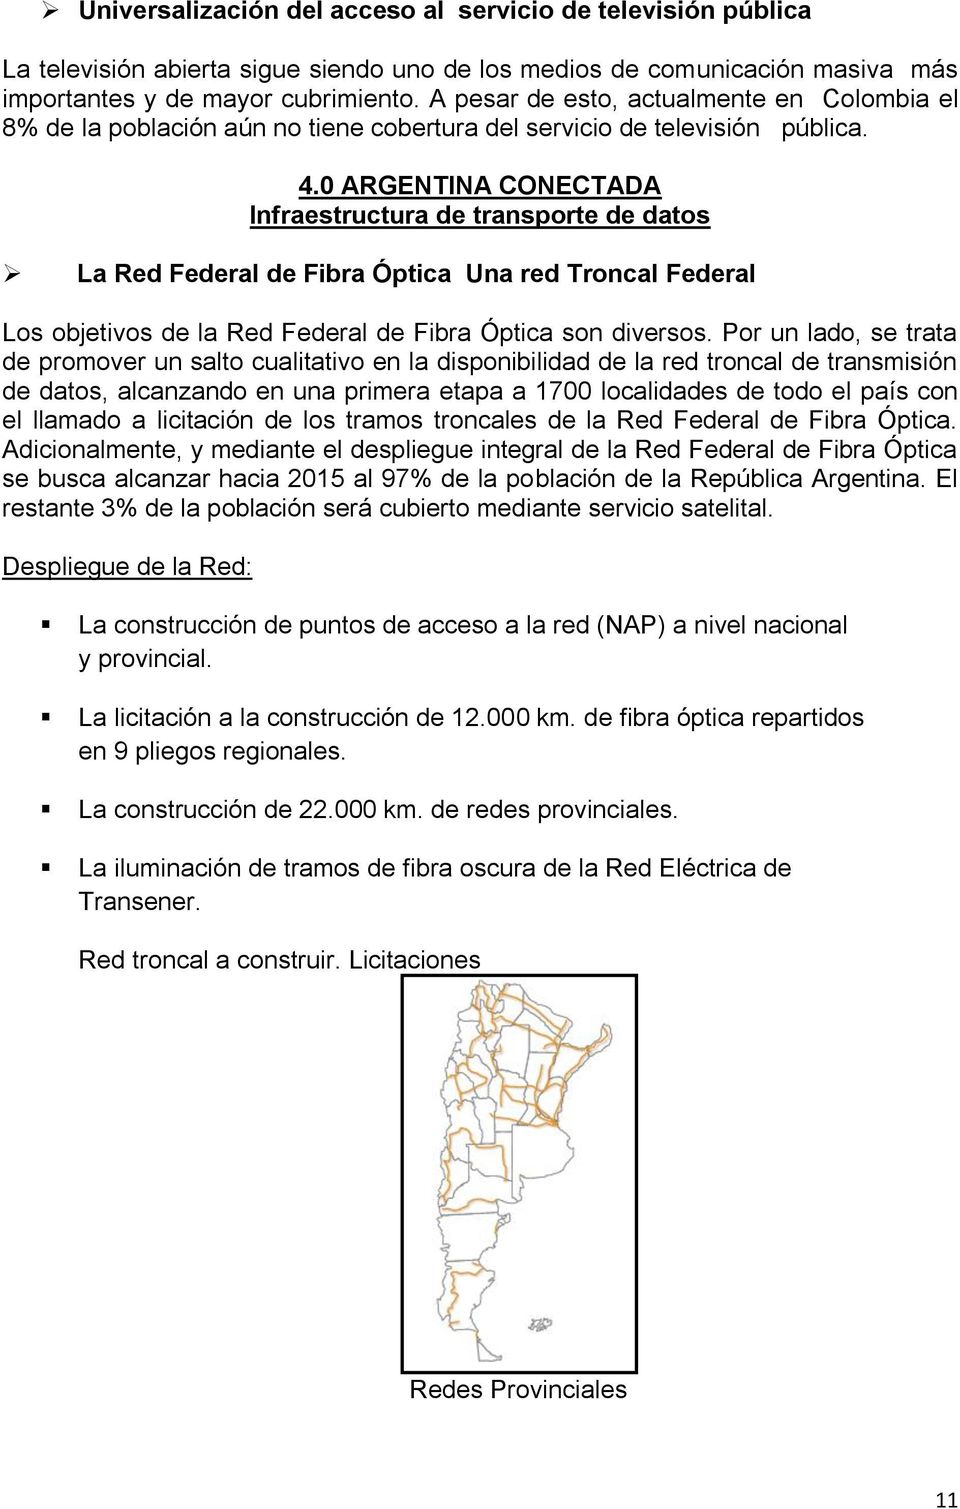 0 ARGENTINA CONECTADA Infraestructura de transporte de datos La Red Federal de Fibra Óptica Una red Troncal Federal Los objetivos de la Red Federal de Fibra Óptica son diversos.